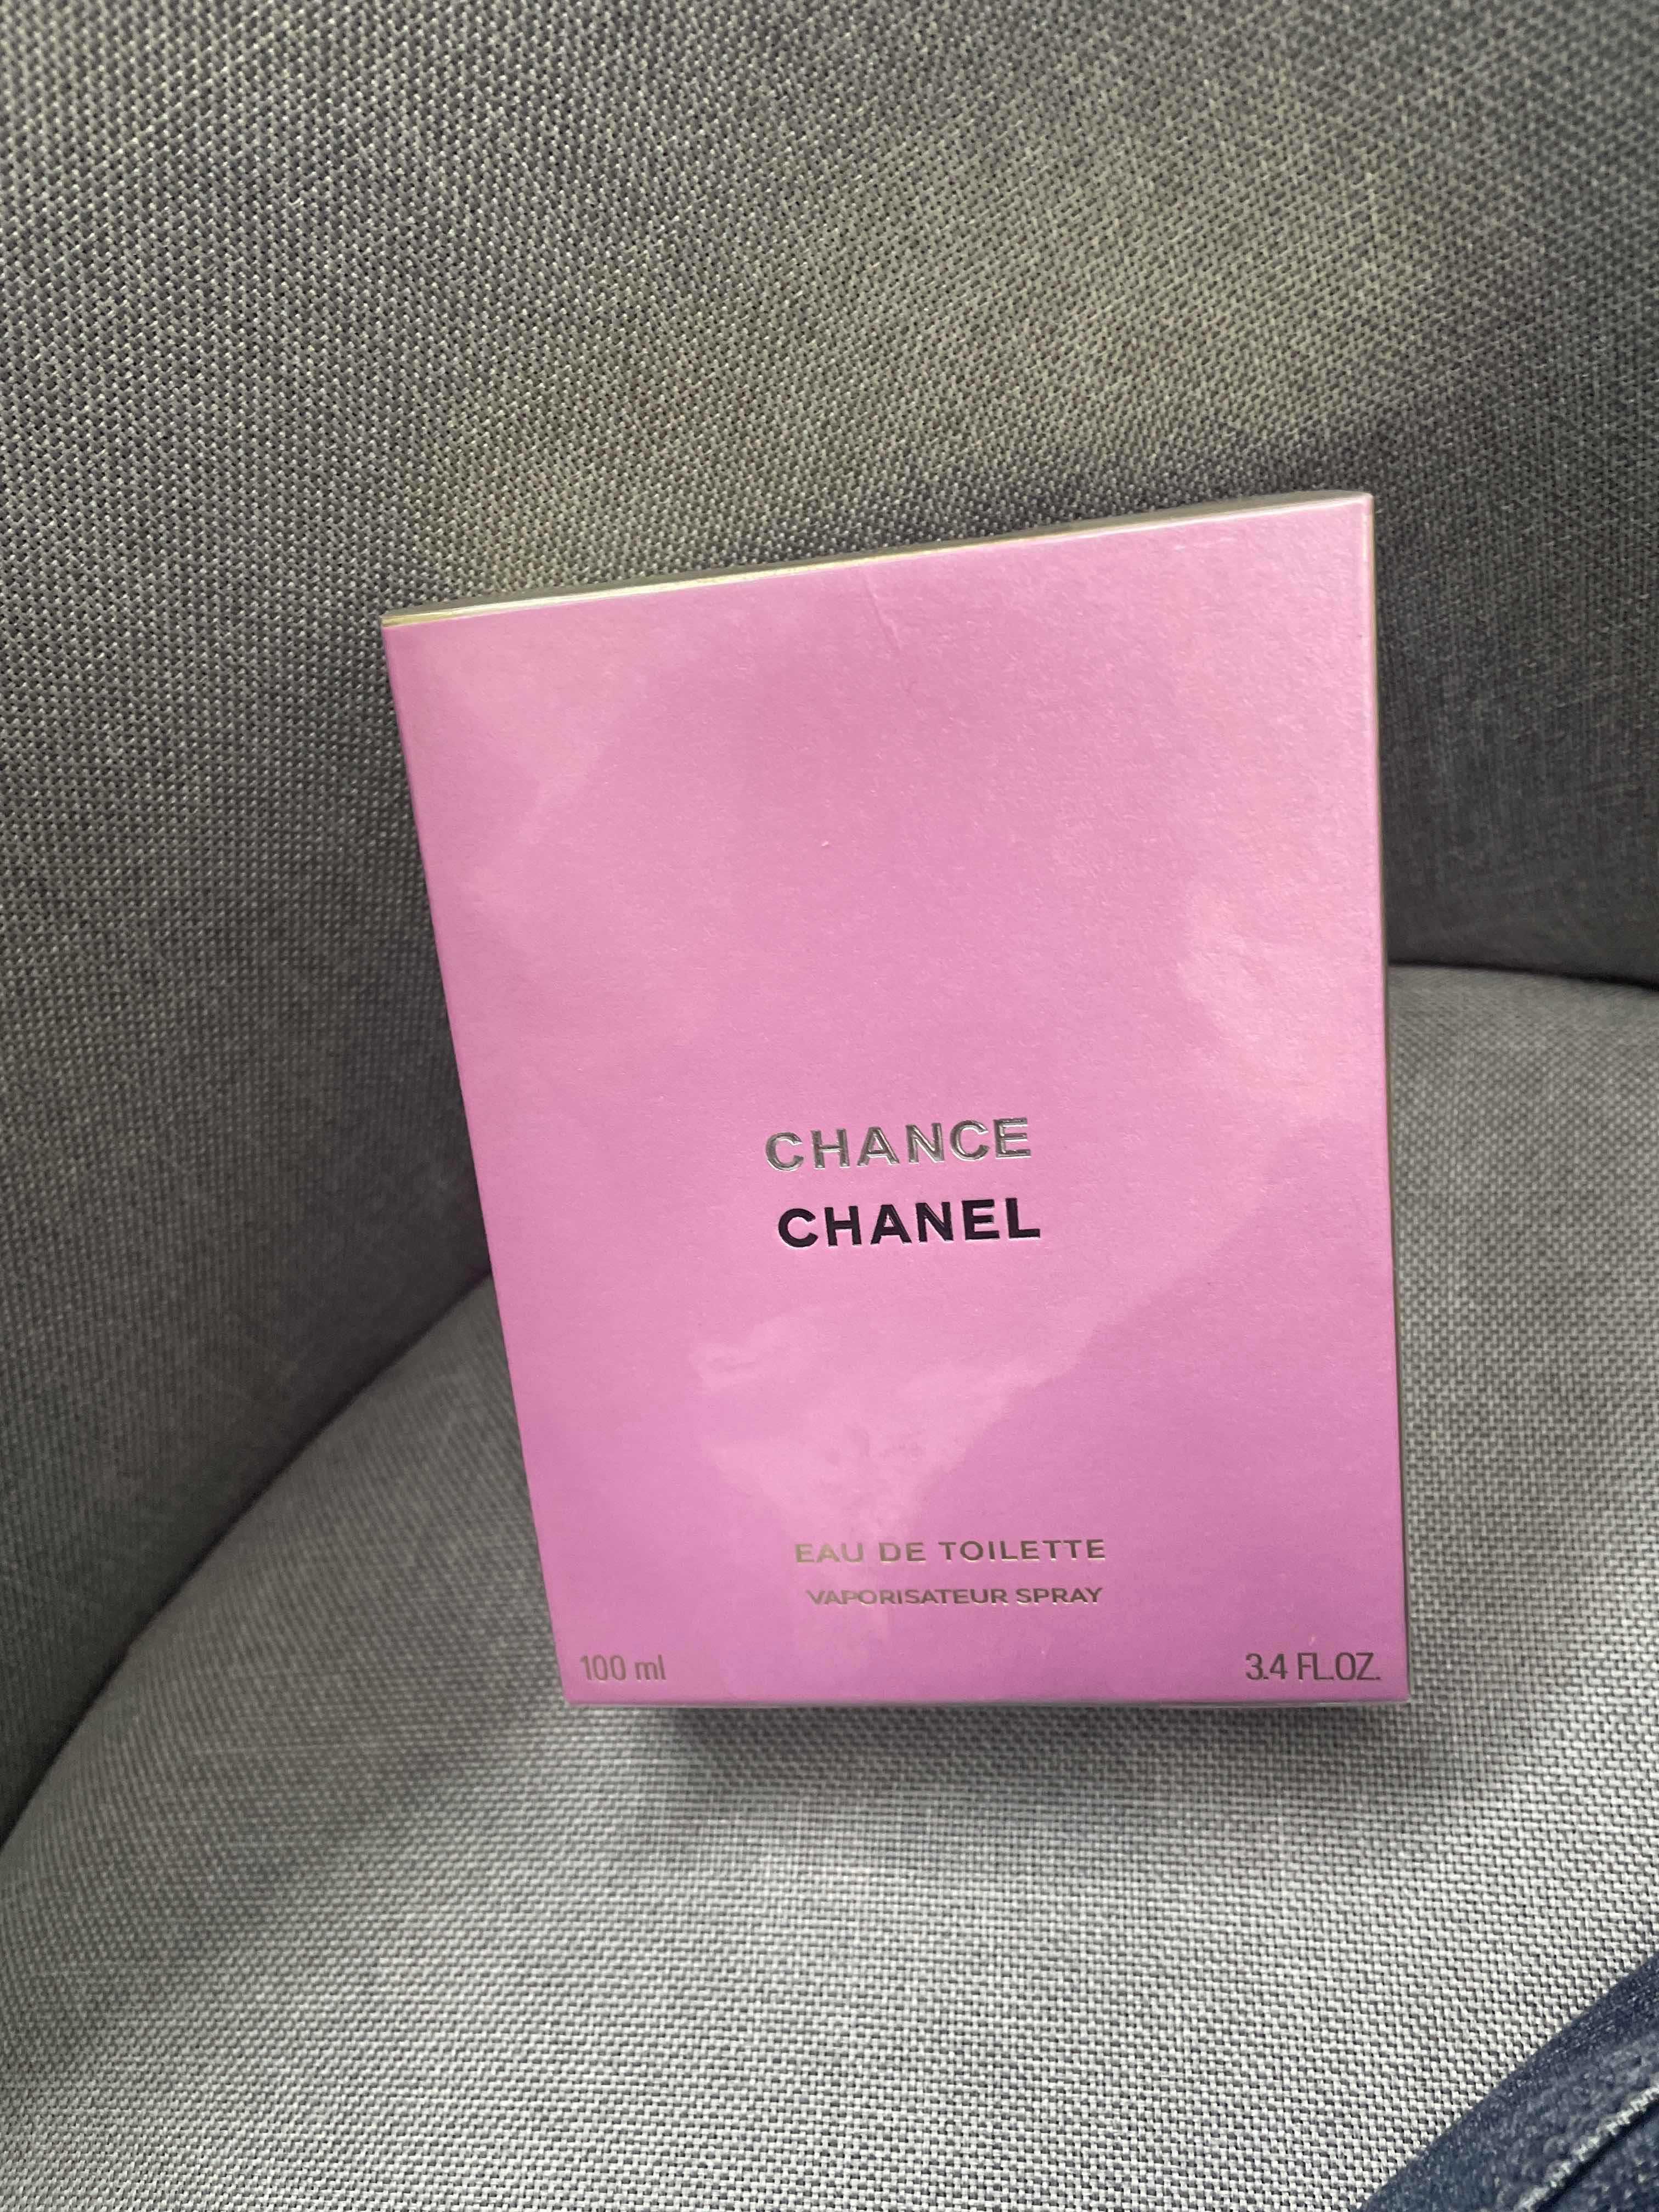 Oryginalna  perfumy Chanel w kolorze żółtym, delikatna, nowa